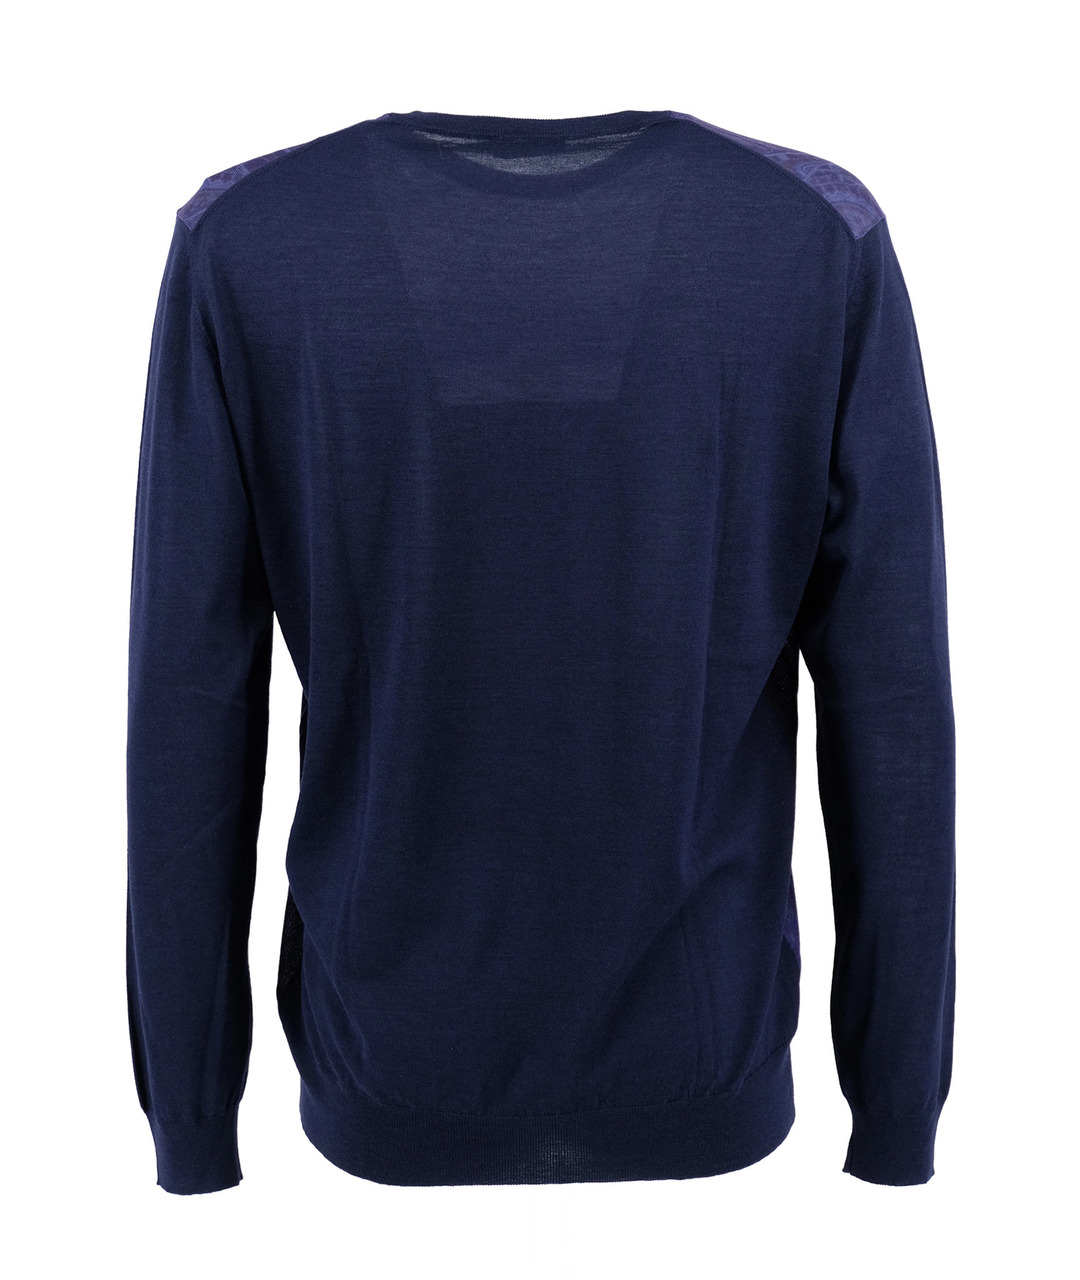 ETRO Фиолетовый шерстяной джемпер / свитер, фото 2